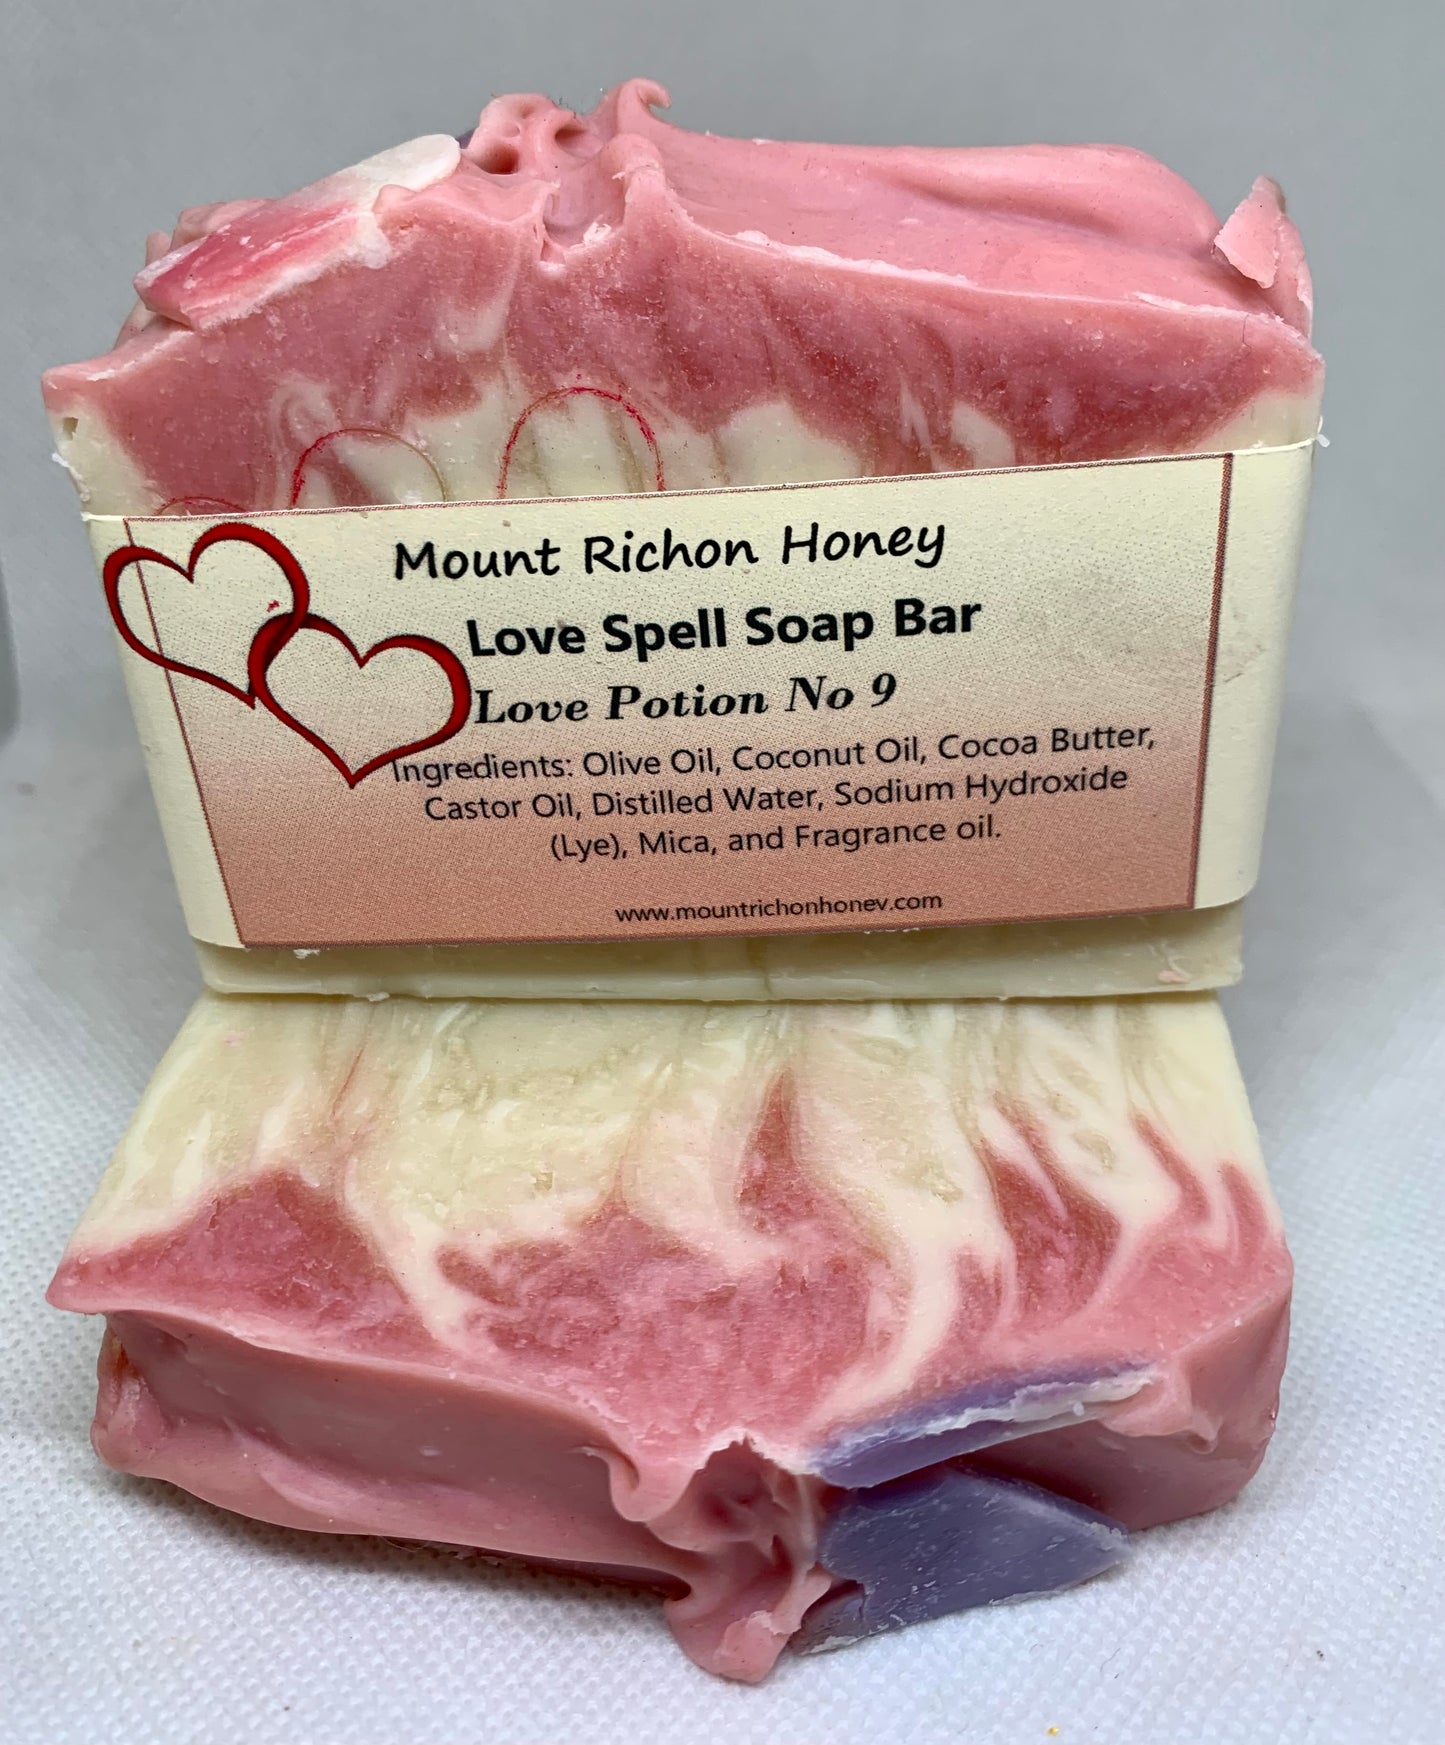 Love Spell Soap bar